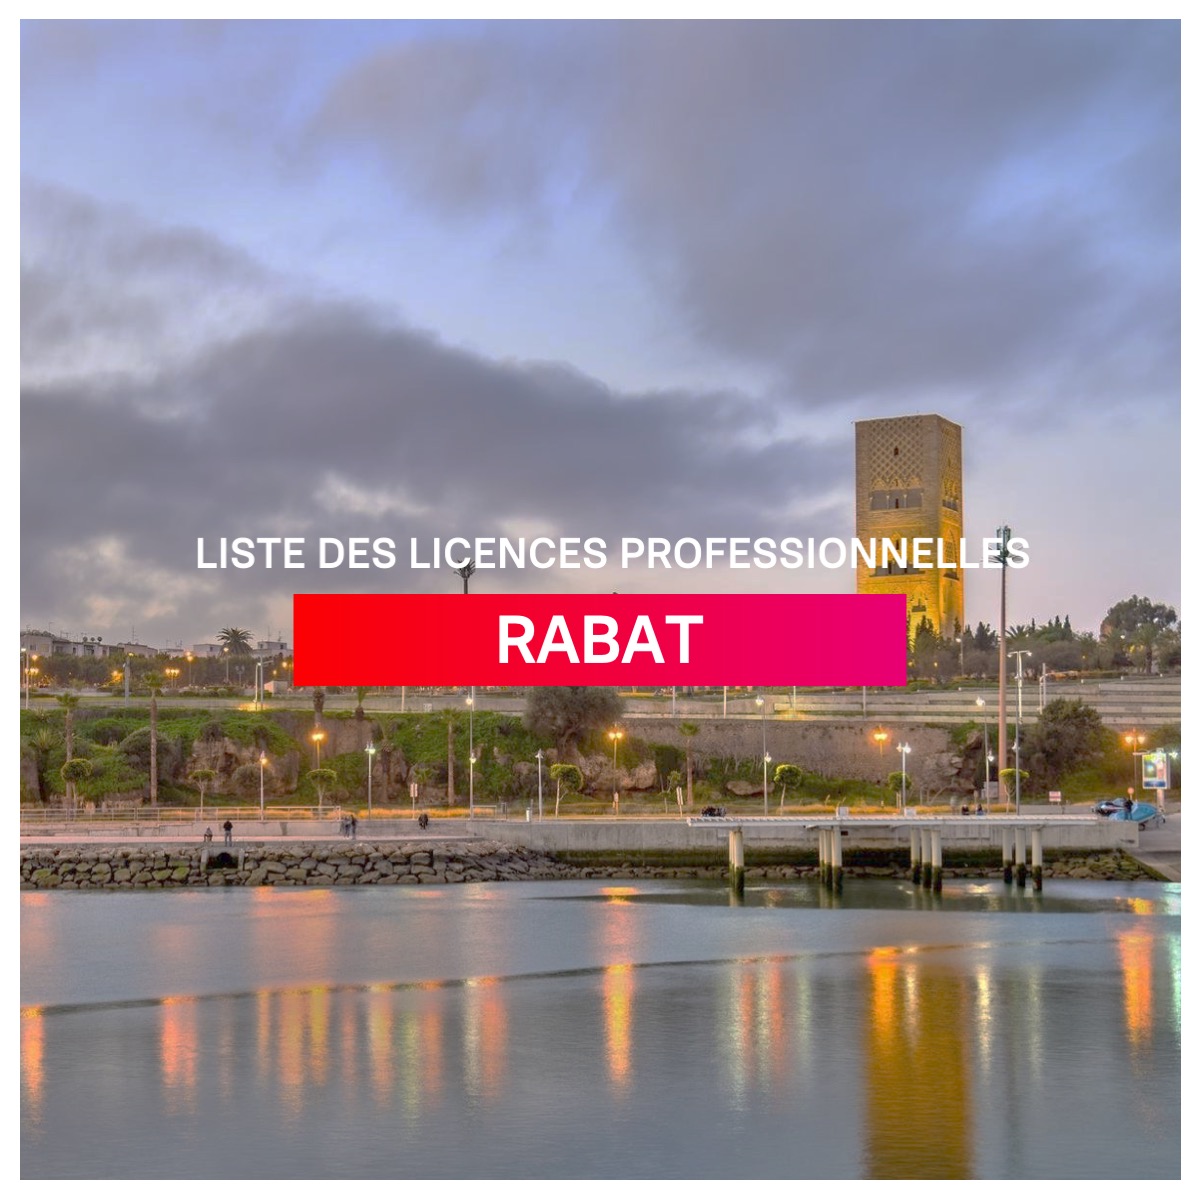 Liste des licences professionnelles a Rabat l mba.ma